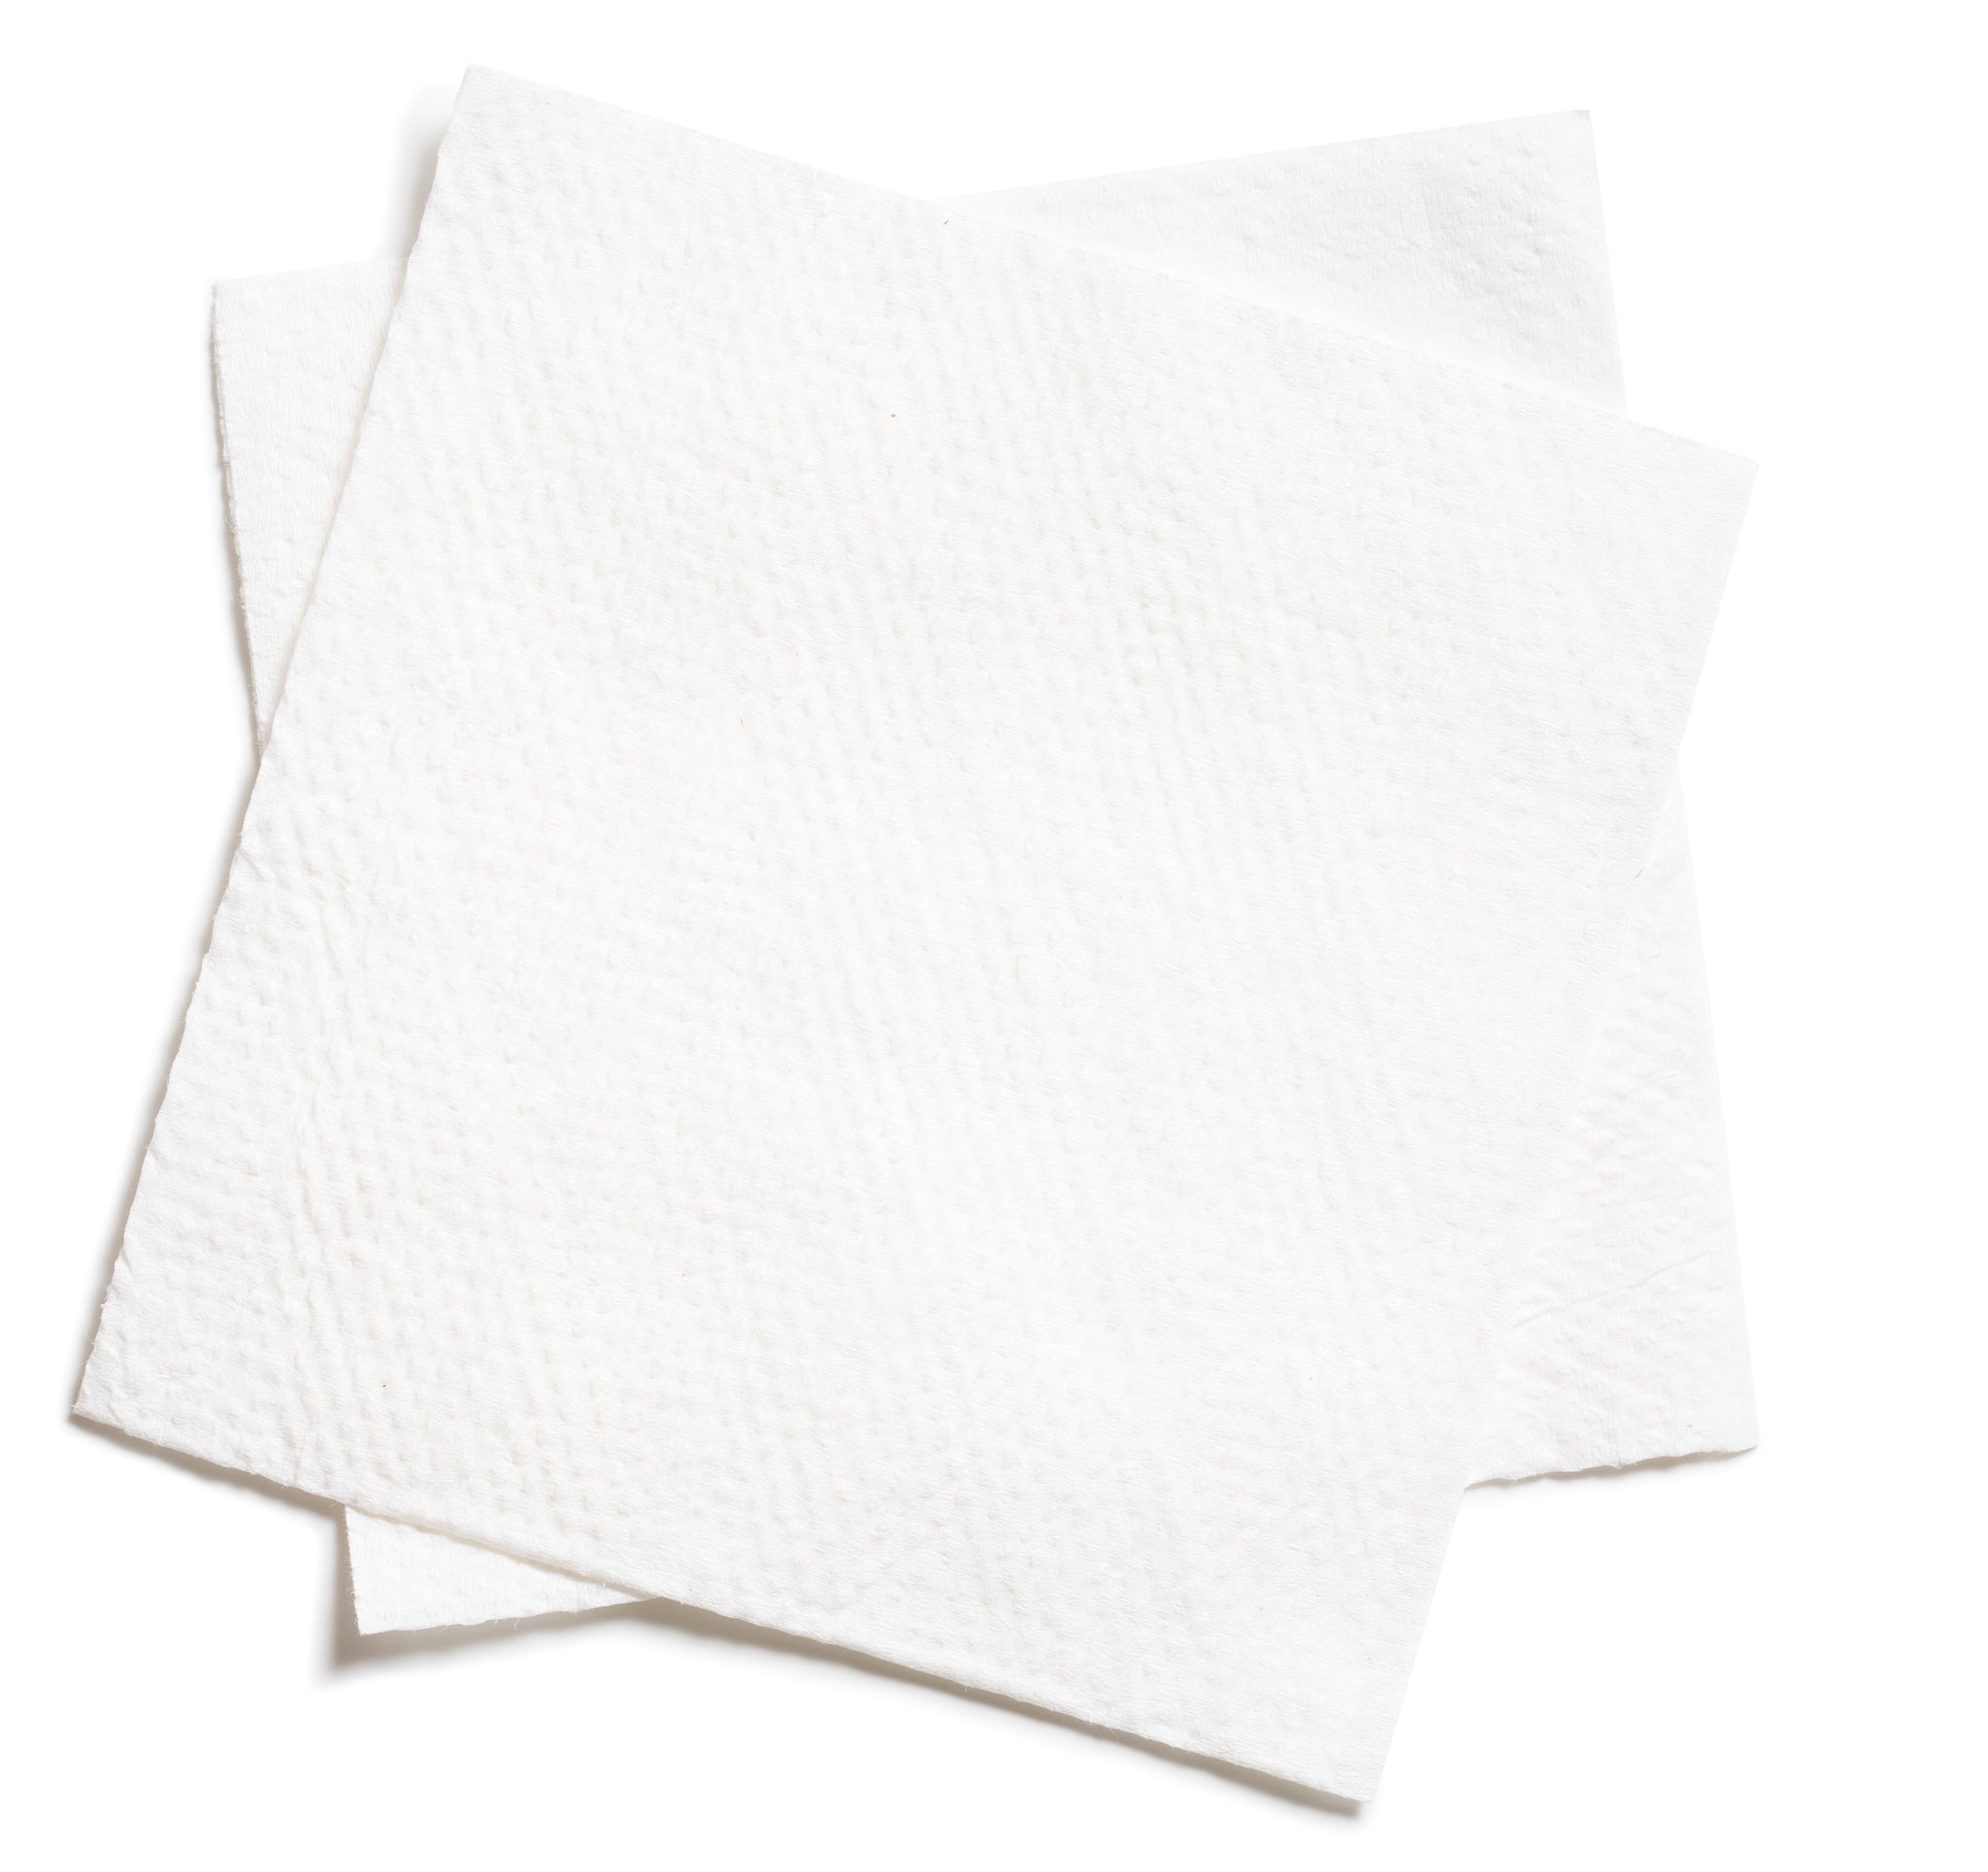 bah>Scott Paper dinner napkins (50 pack)